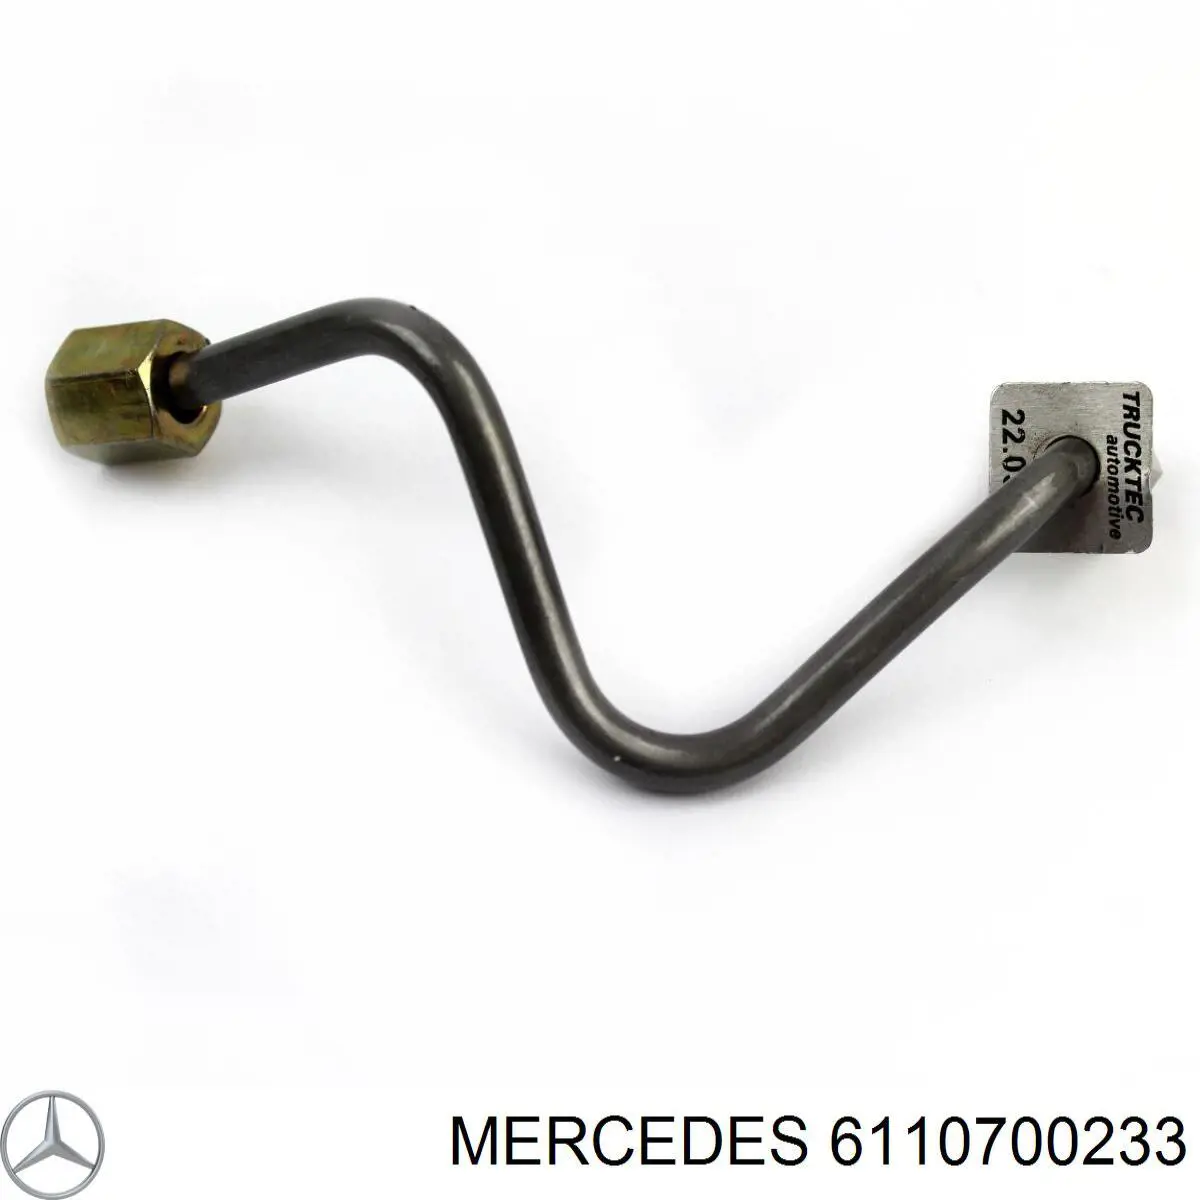  611 070 02 33 Mercedes трубка топливная форсунки 1-го цилиндра